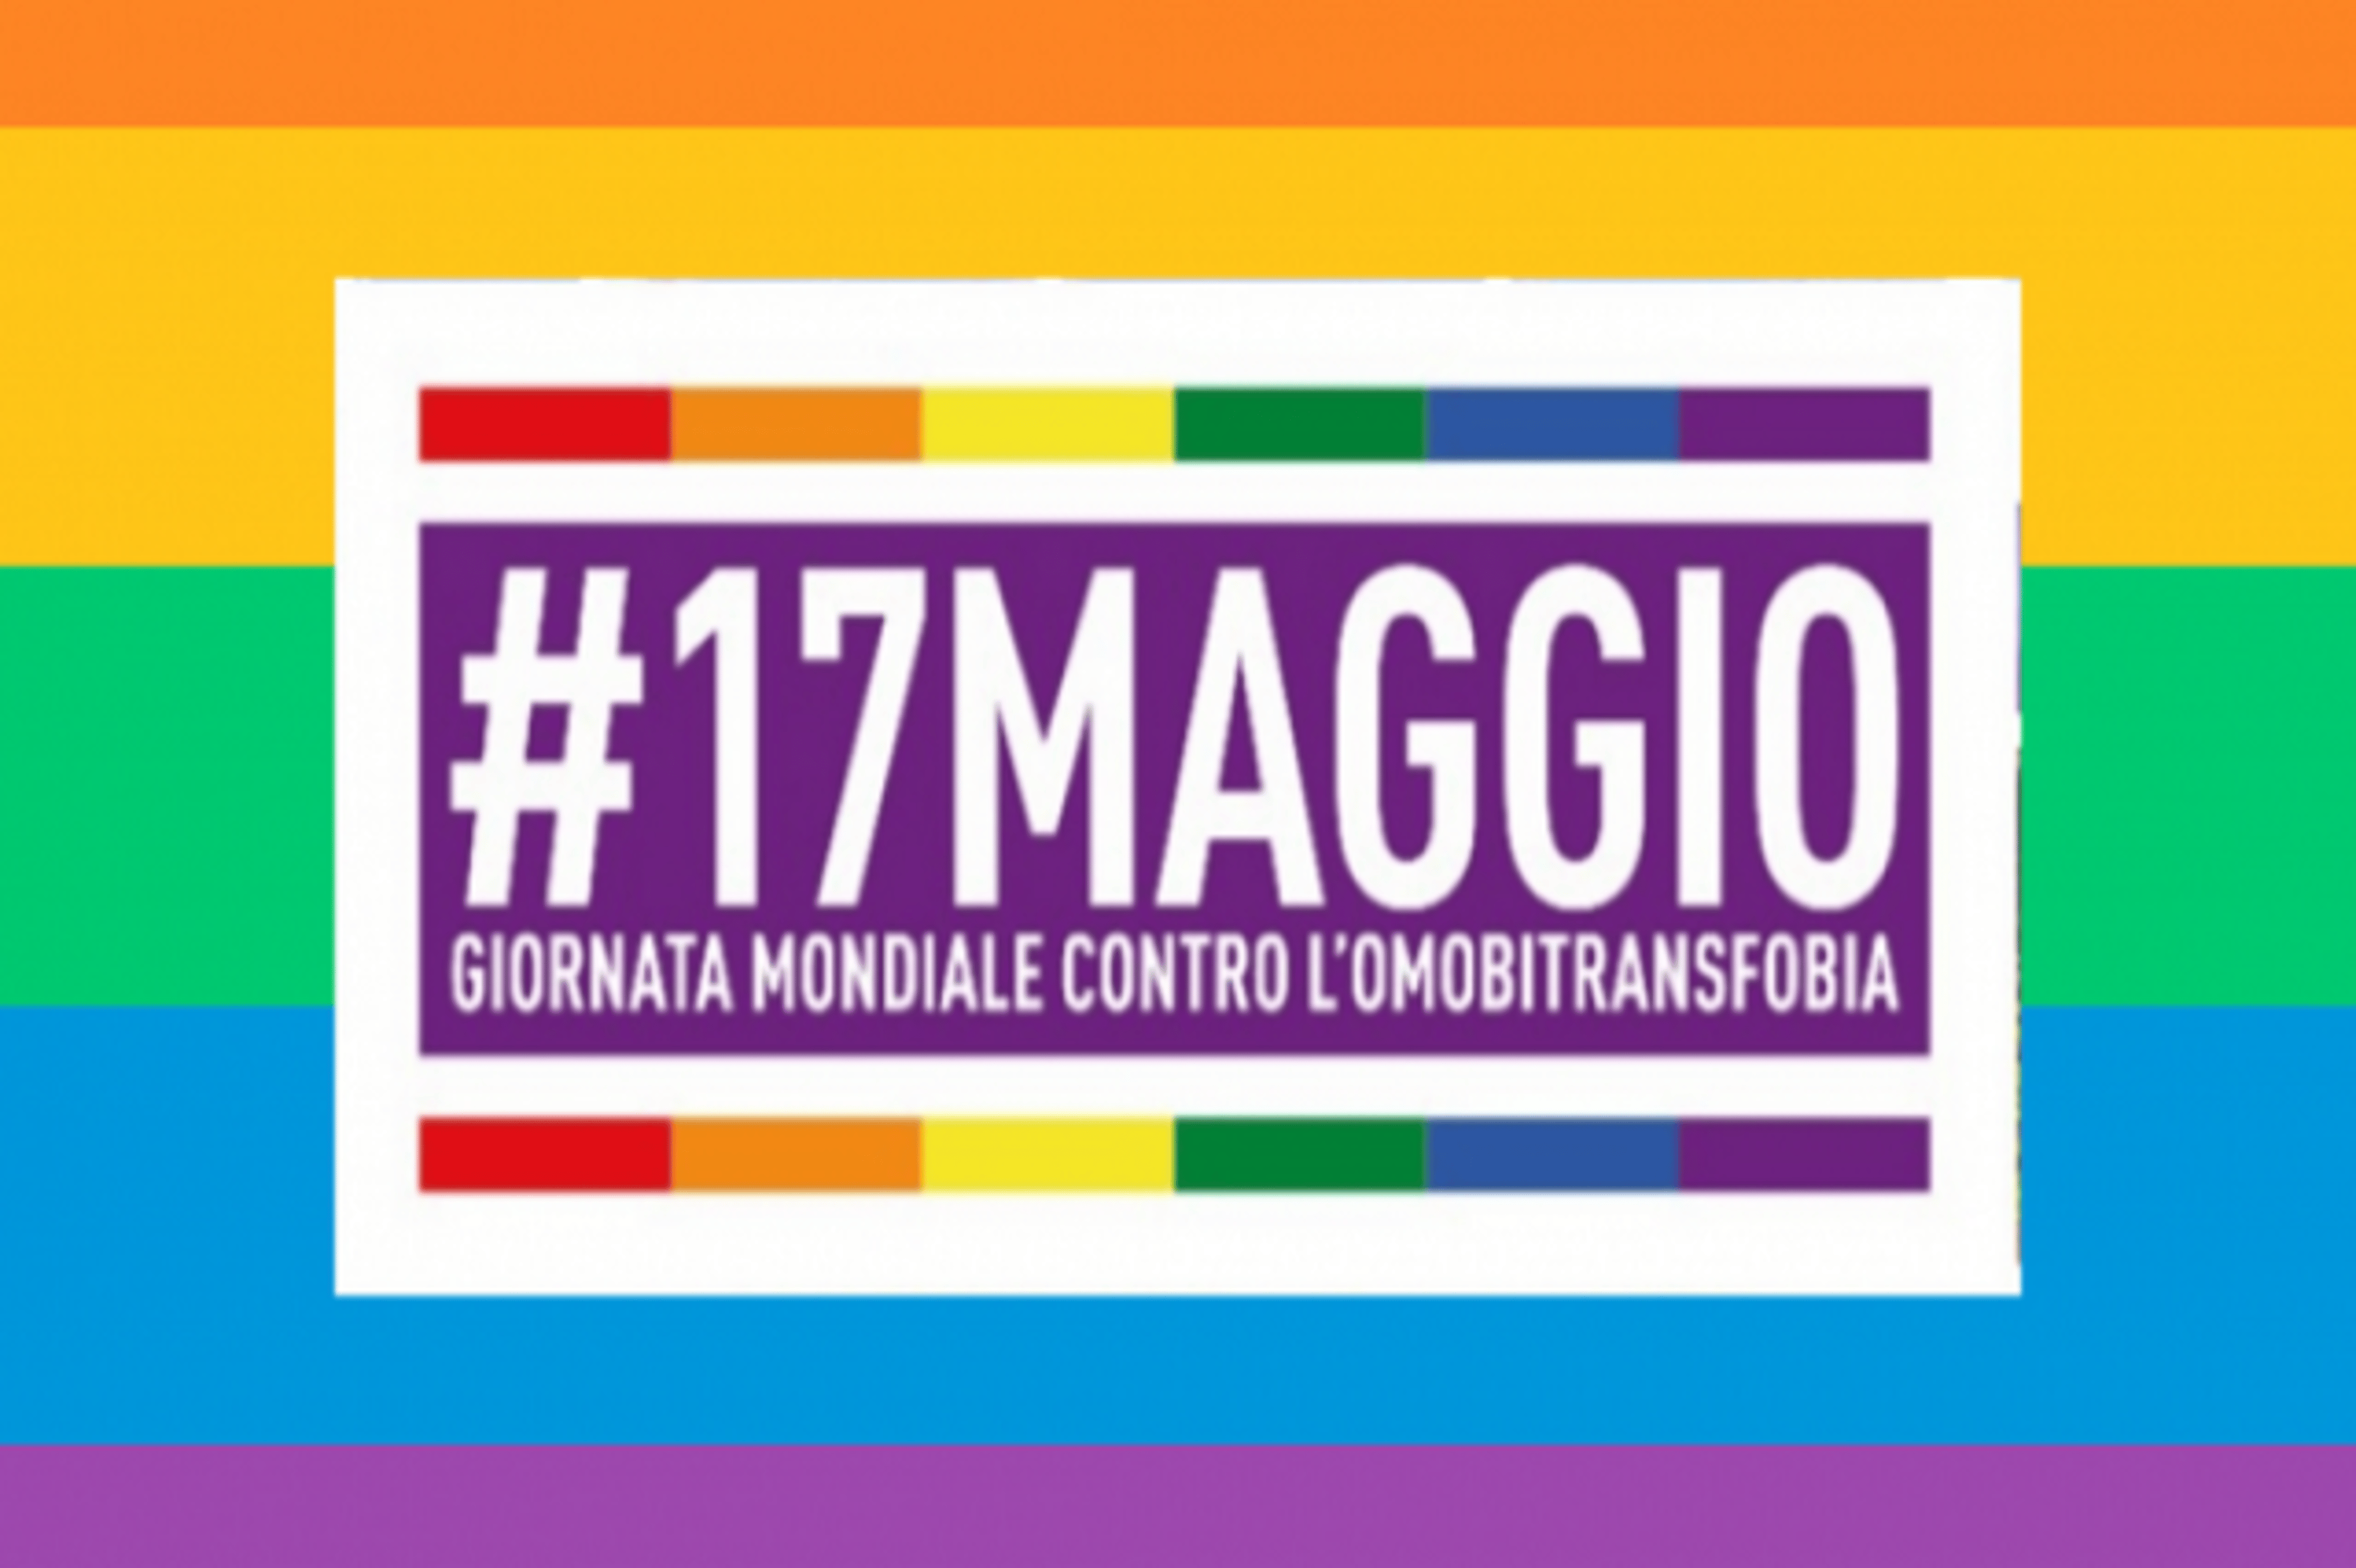 Giornata mondiale contro l’omotransfobia: ecco 10 videogiochi a tema LGBTQ+ Copertina